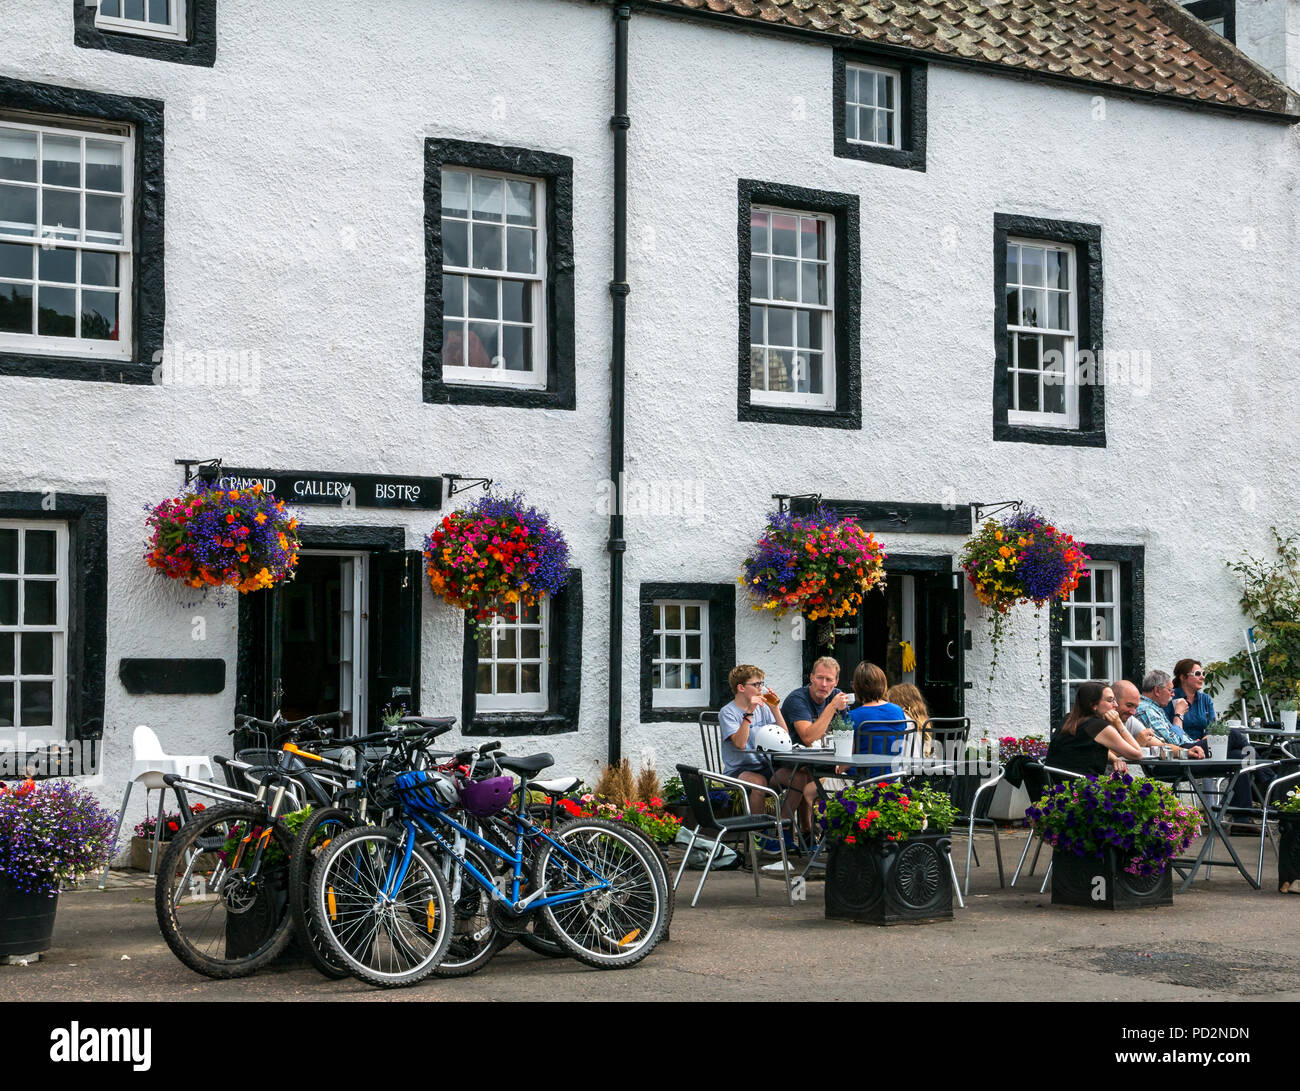 Les gens assis à des tables avec des vélos garés, Cramond Gallery Bistro, Cramond, Edinburgh, Scotland, UK avec des paniers de fleurs en été Banque D'Images